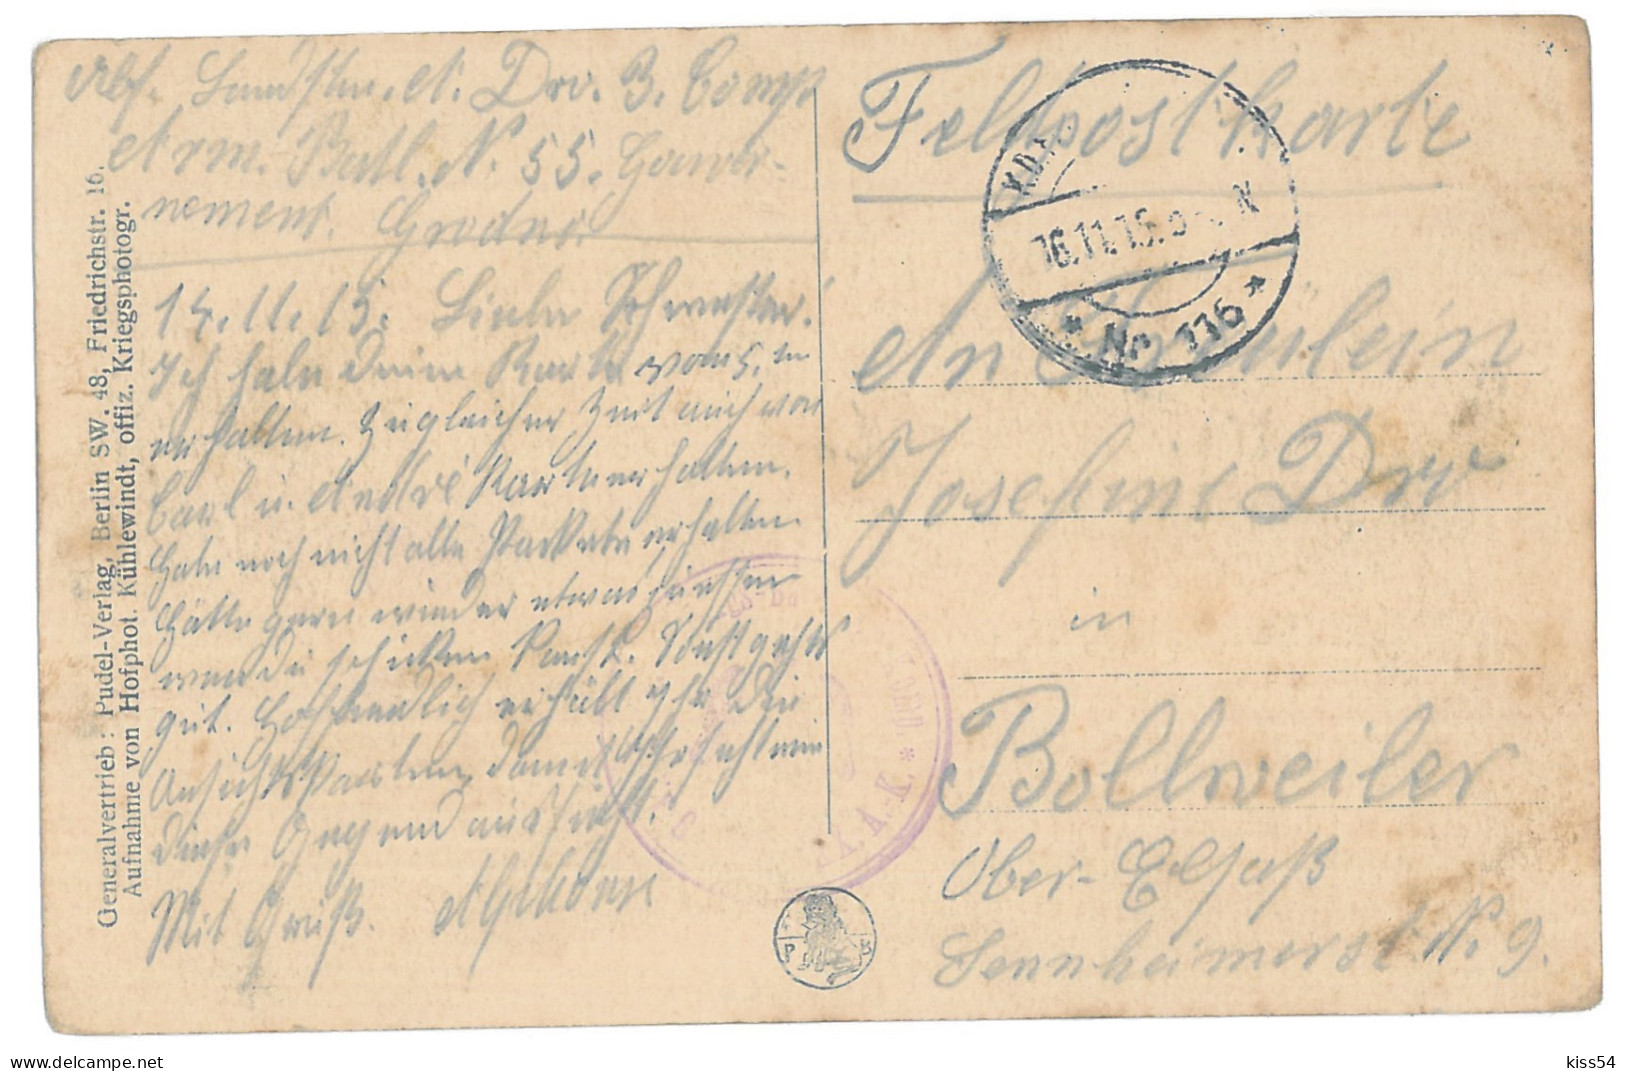 BL 28 - 14633 GRODNO, Railway Station, Bombed, Belarus - Old Postcard, CENSOR - Used - 1915 - Belarus